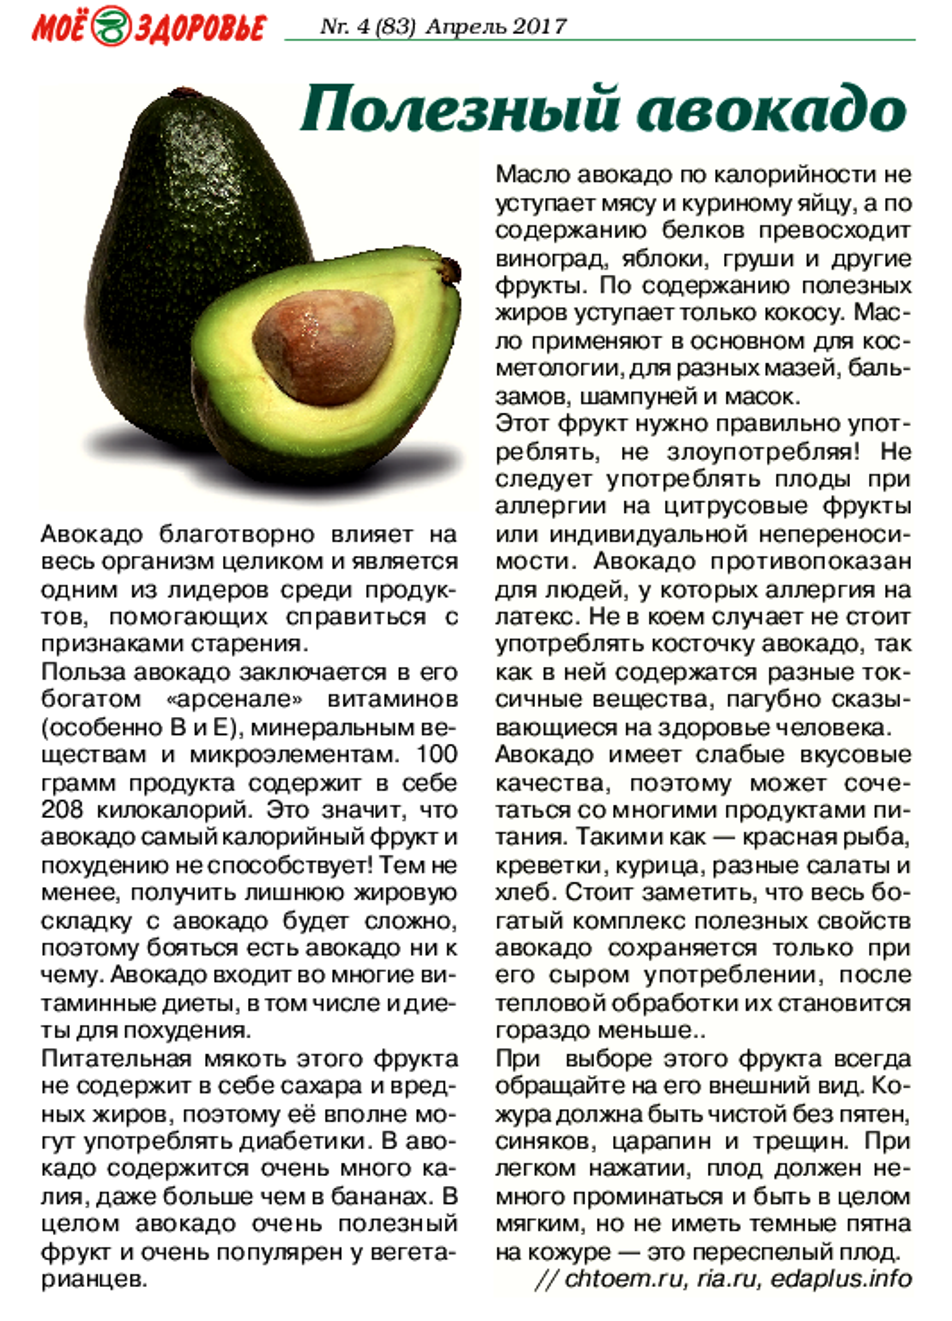 Авокадо - полезные свойства для женщин и мужчин, противопоказания